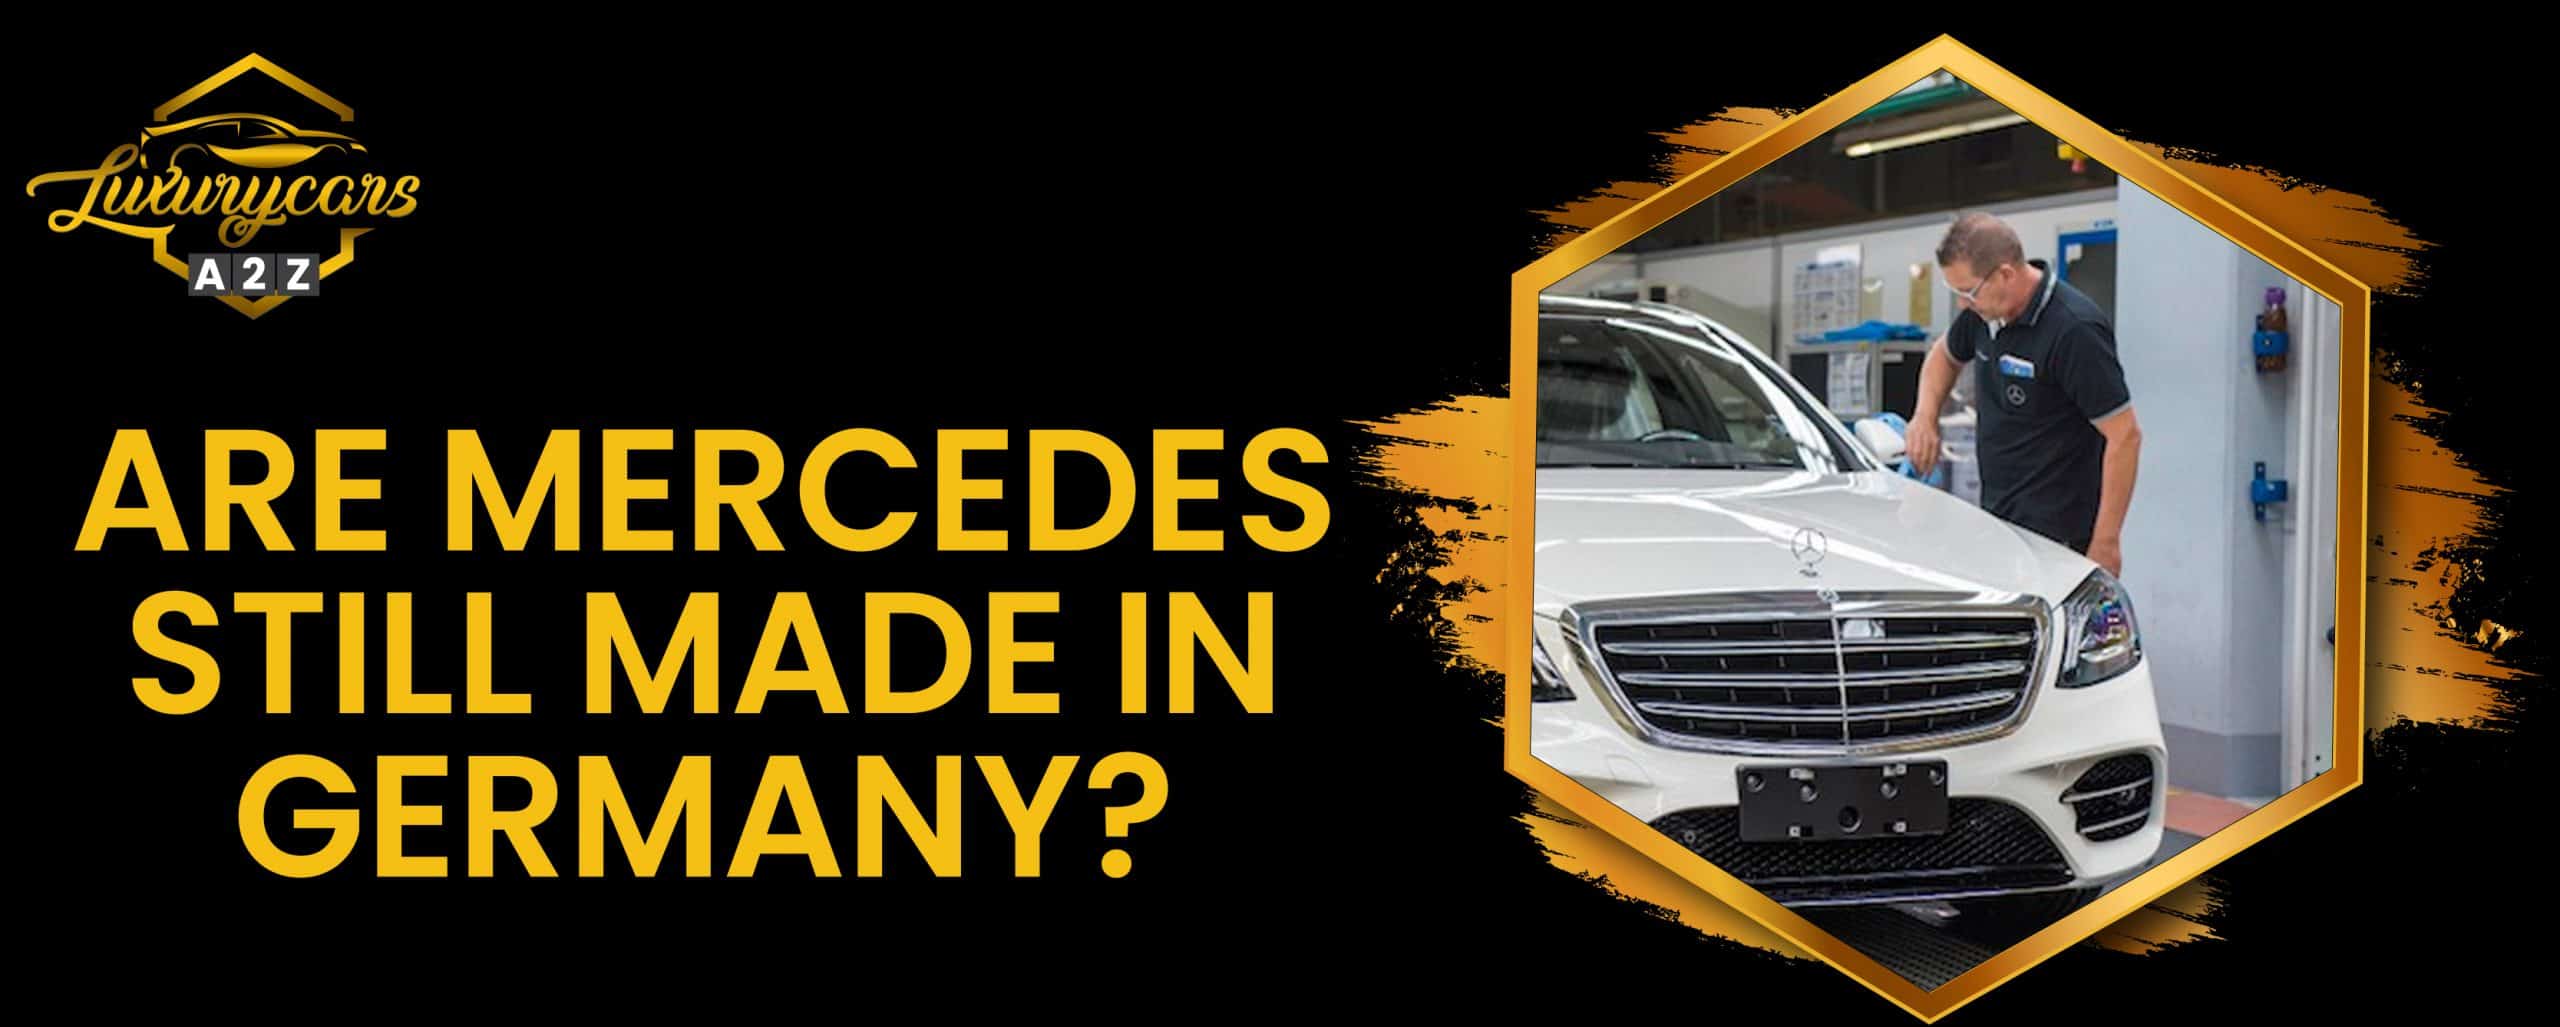 Les Mercedes sont-elles toujours fabriquées en Allemagne ?